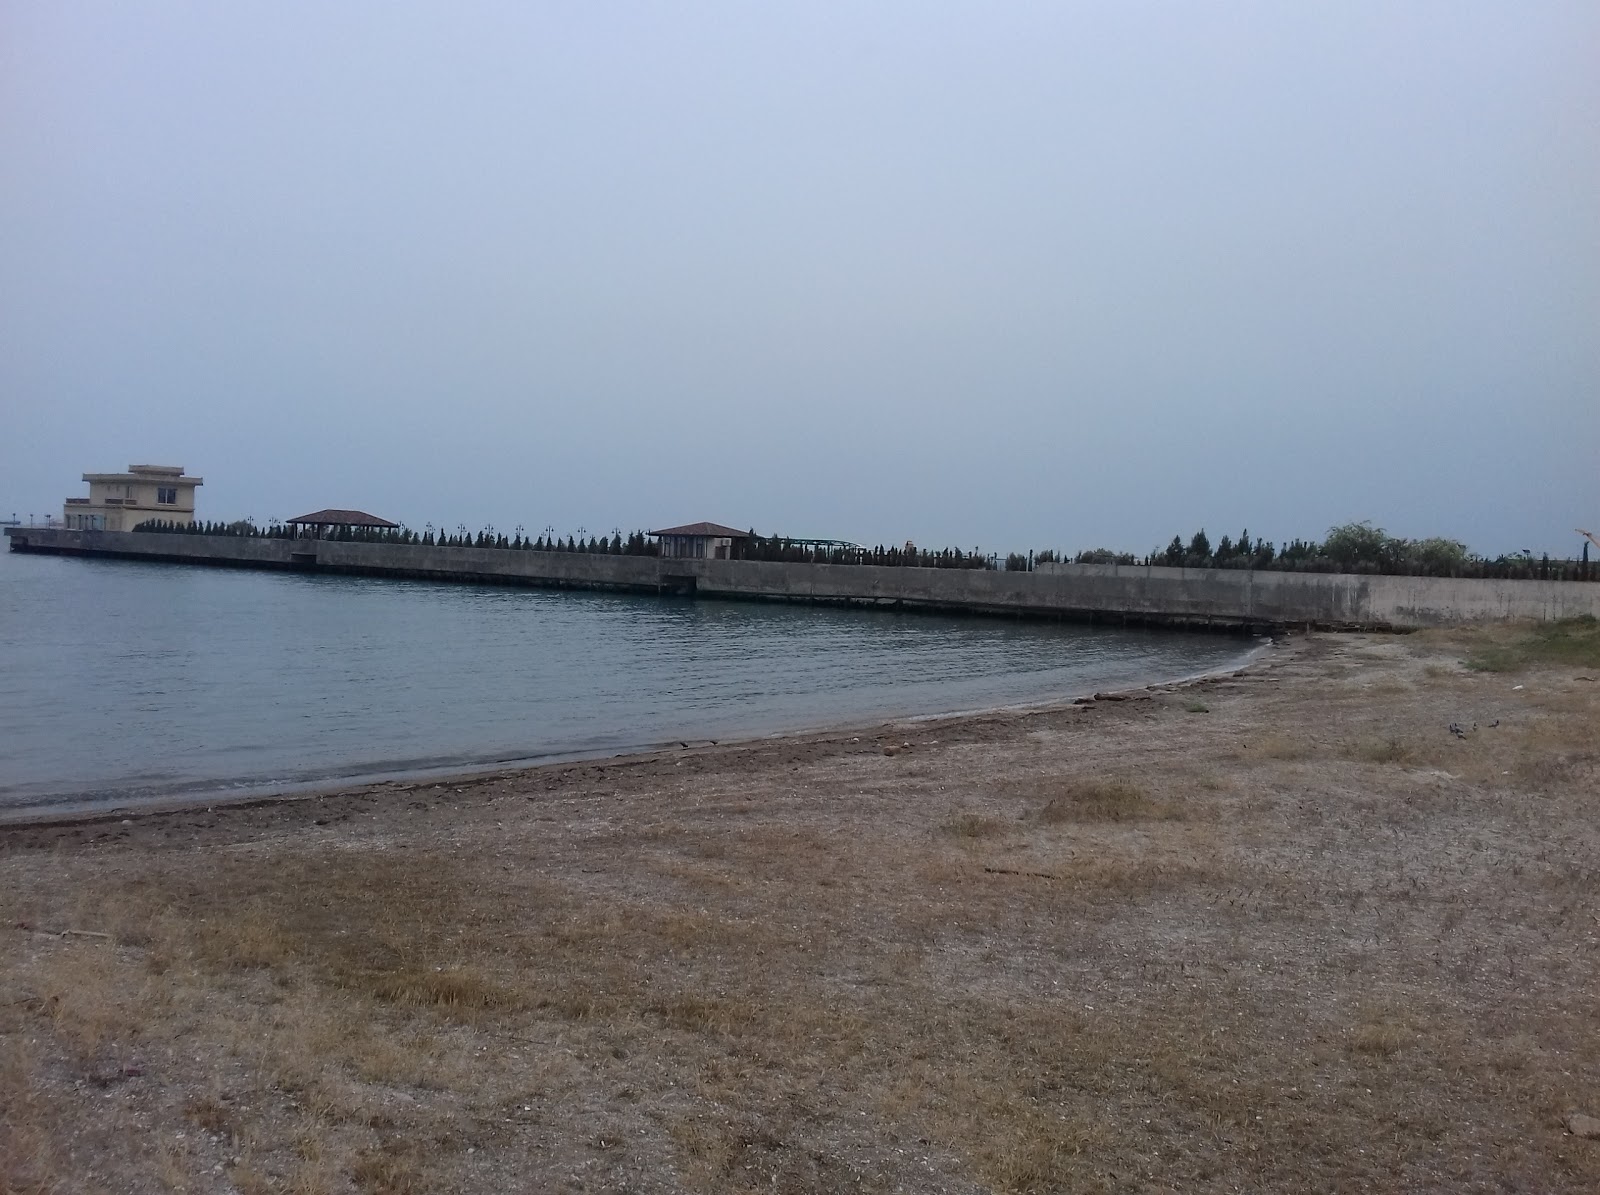 Bakhtiyar Aliyev Str. Beach'in fotoğrafı geniş plaj ile birlikte